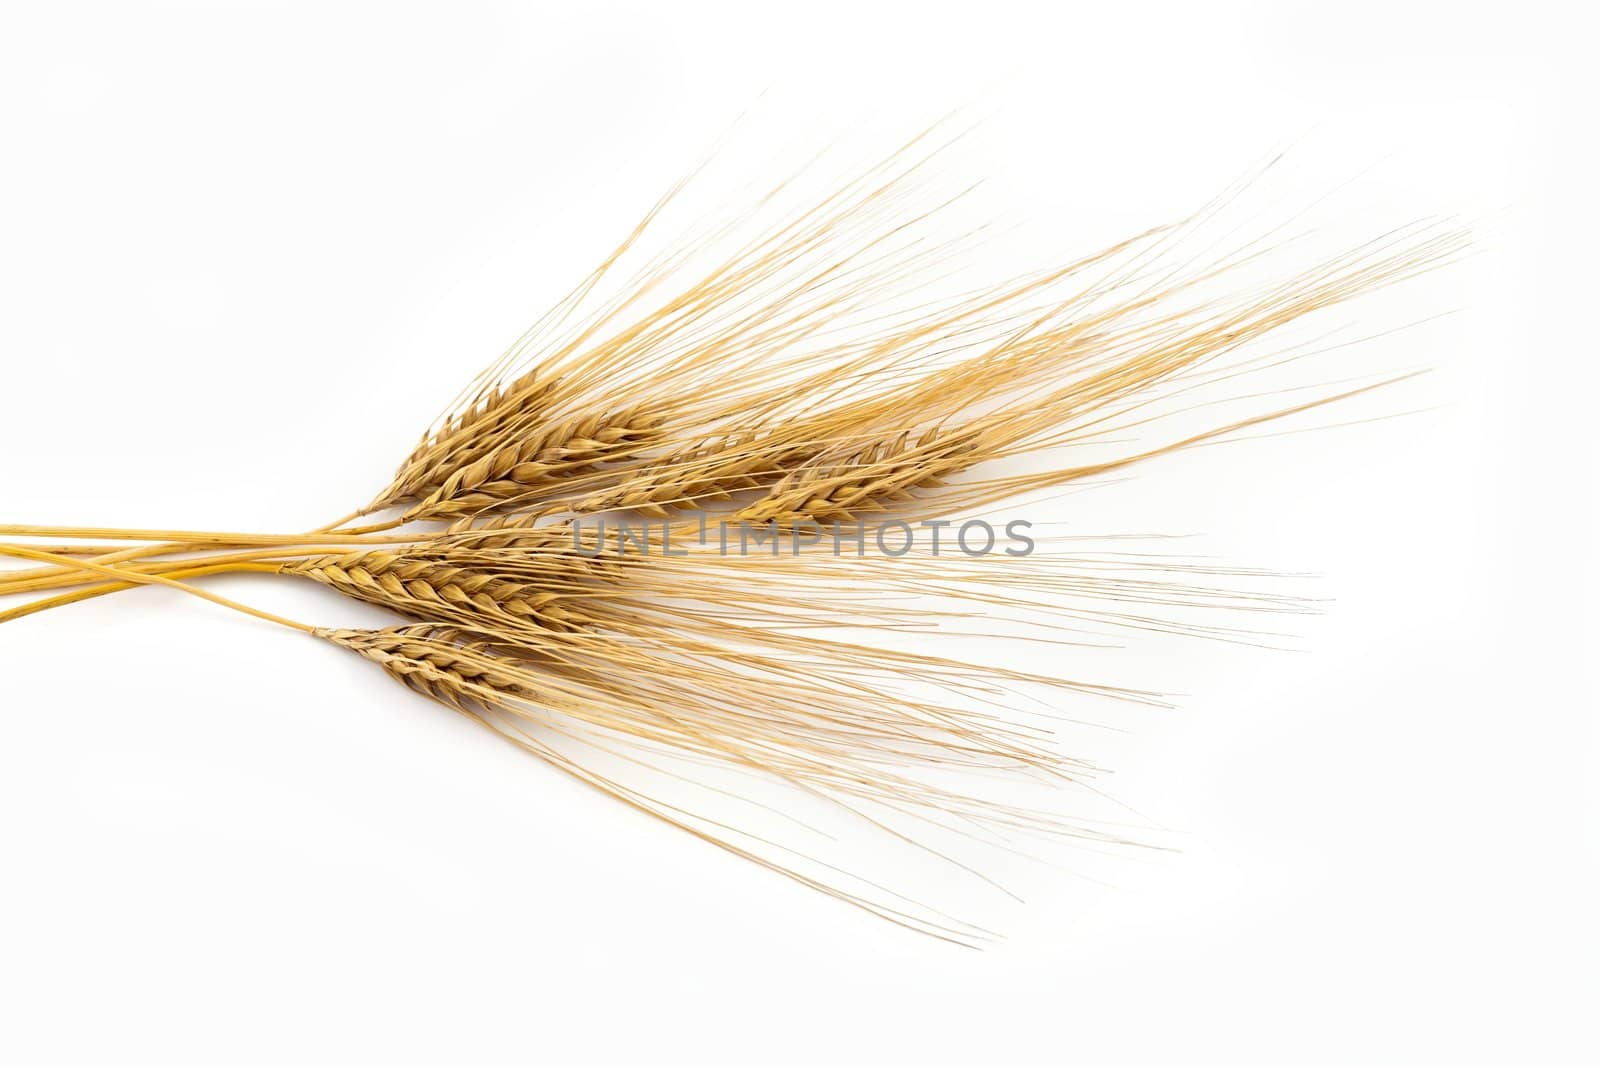 Bunch of barley by velkol